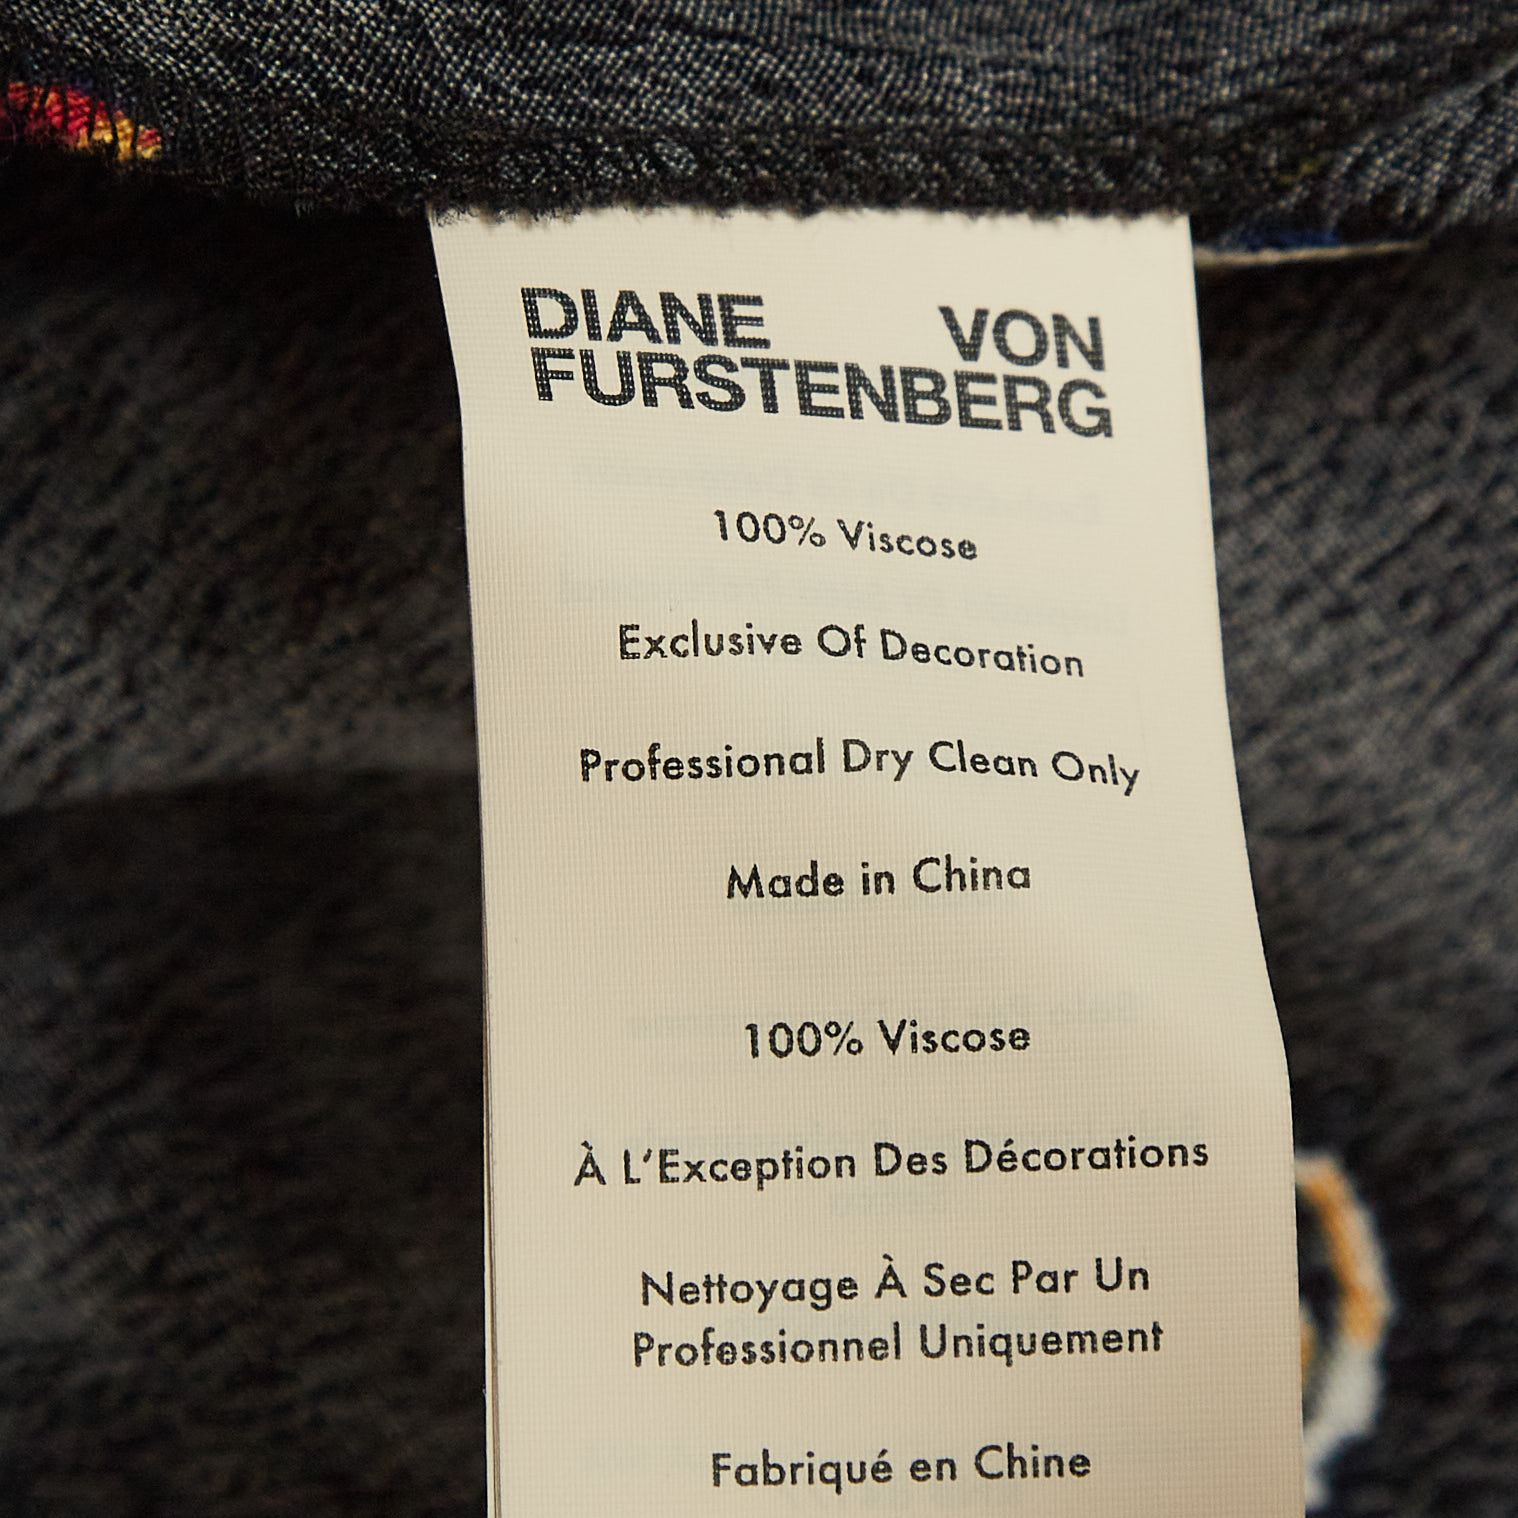 Diane Von Furstenberg Black Polka Dot Print Crepe Midi Skirt M